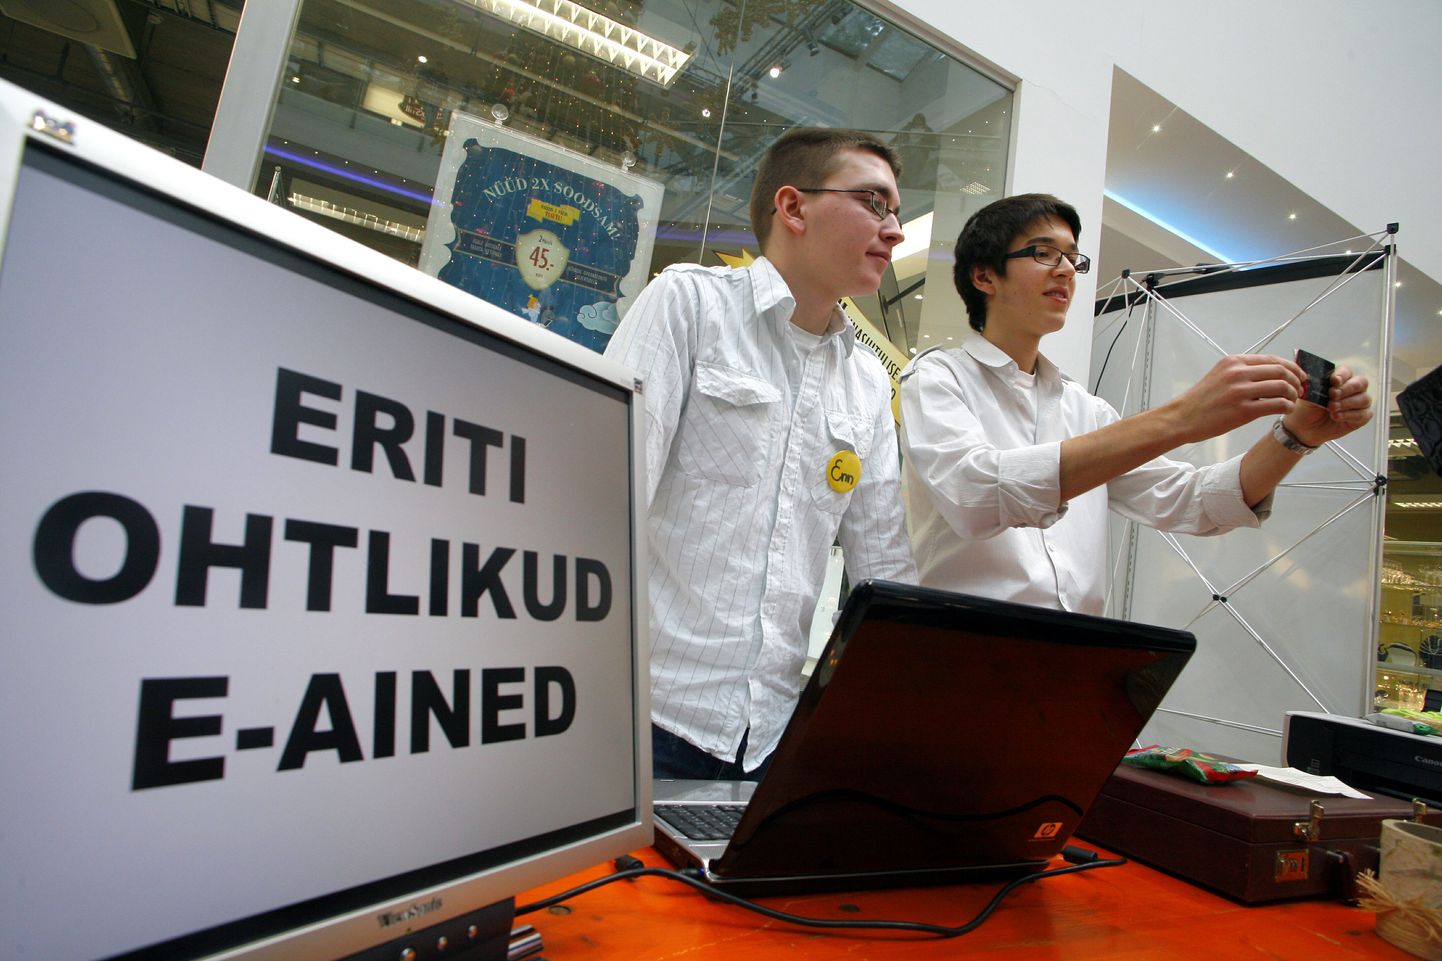 Eesti õpilasfirmade laadal parima idee preemia pälvinud õpilasfirma "E-ained" sõidab oma toodet tutvustama üle-euroopalisele laadale Bratislavas.